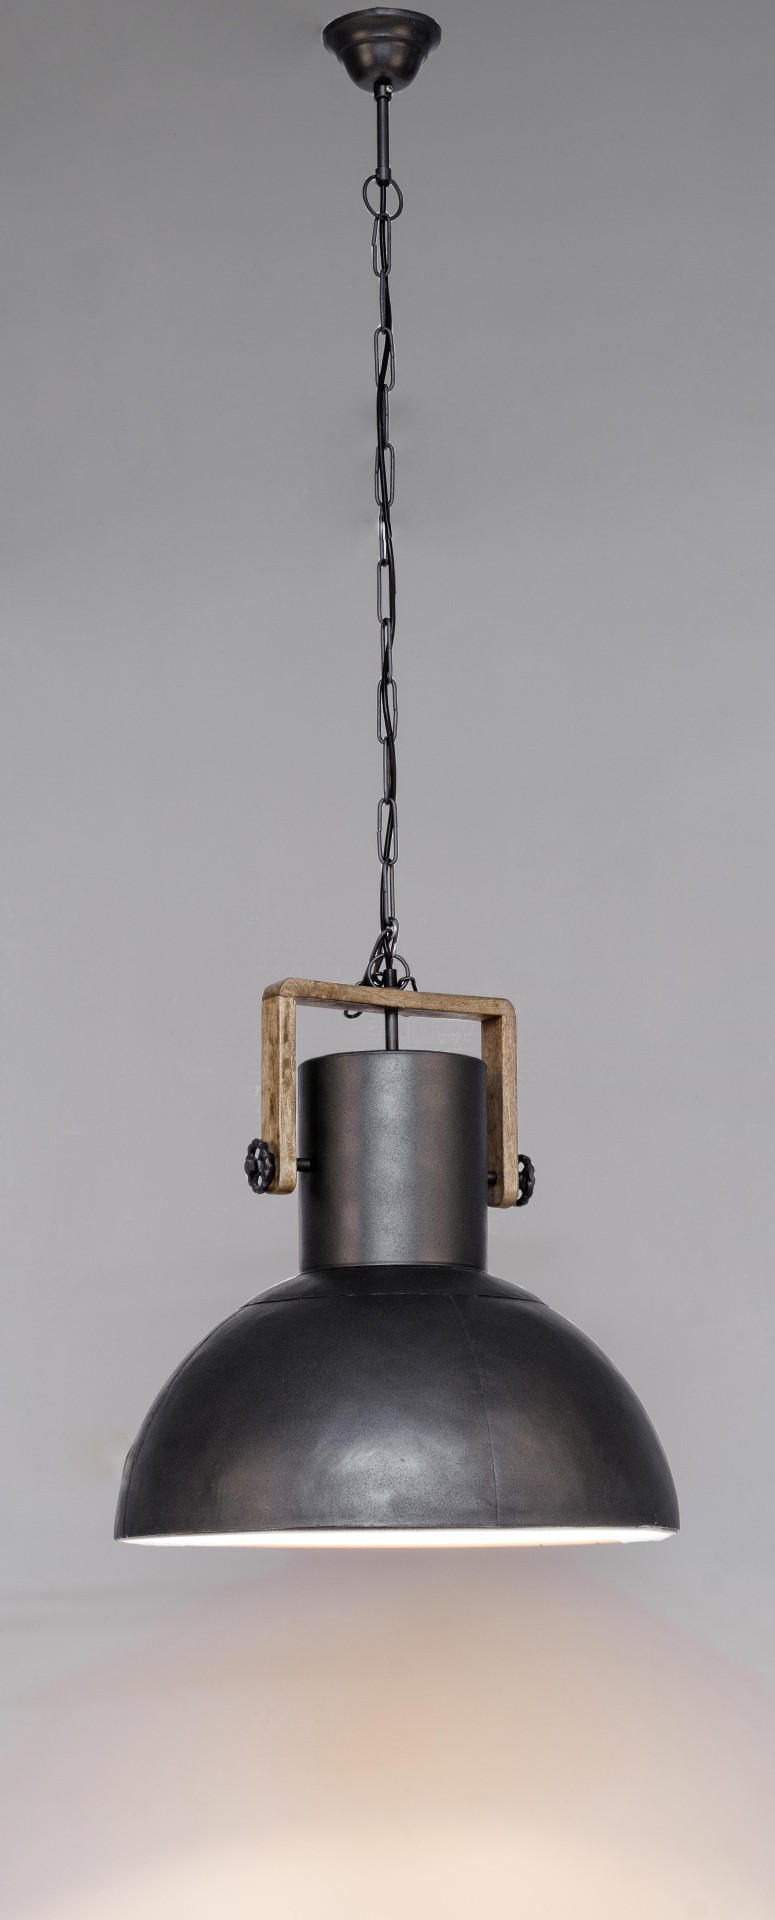 Die Hängeleuchte Odessa überzeugt mit ihrem industriellen Design. Gefertigt wurde sie aus Mangoholz, welches einen natürlichen Farbton besitzt. Der Lampenschirm ist aus Metall und haben eine Anthrazit Farbe. Die Lampe besitzt eine Höhe von 178 cm.